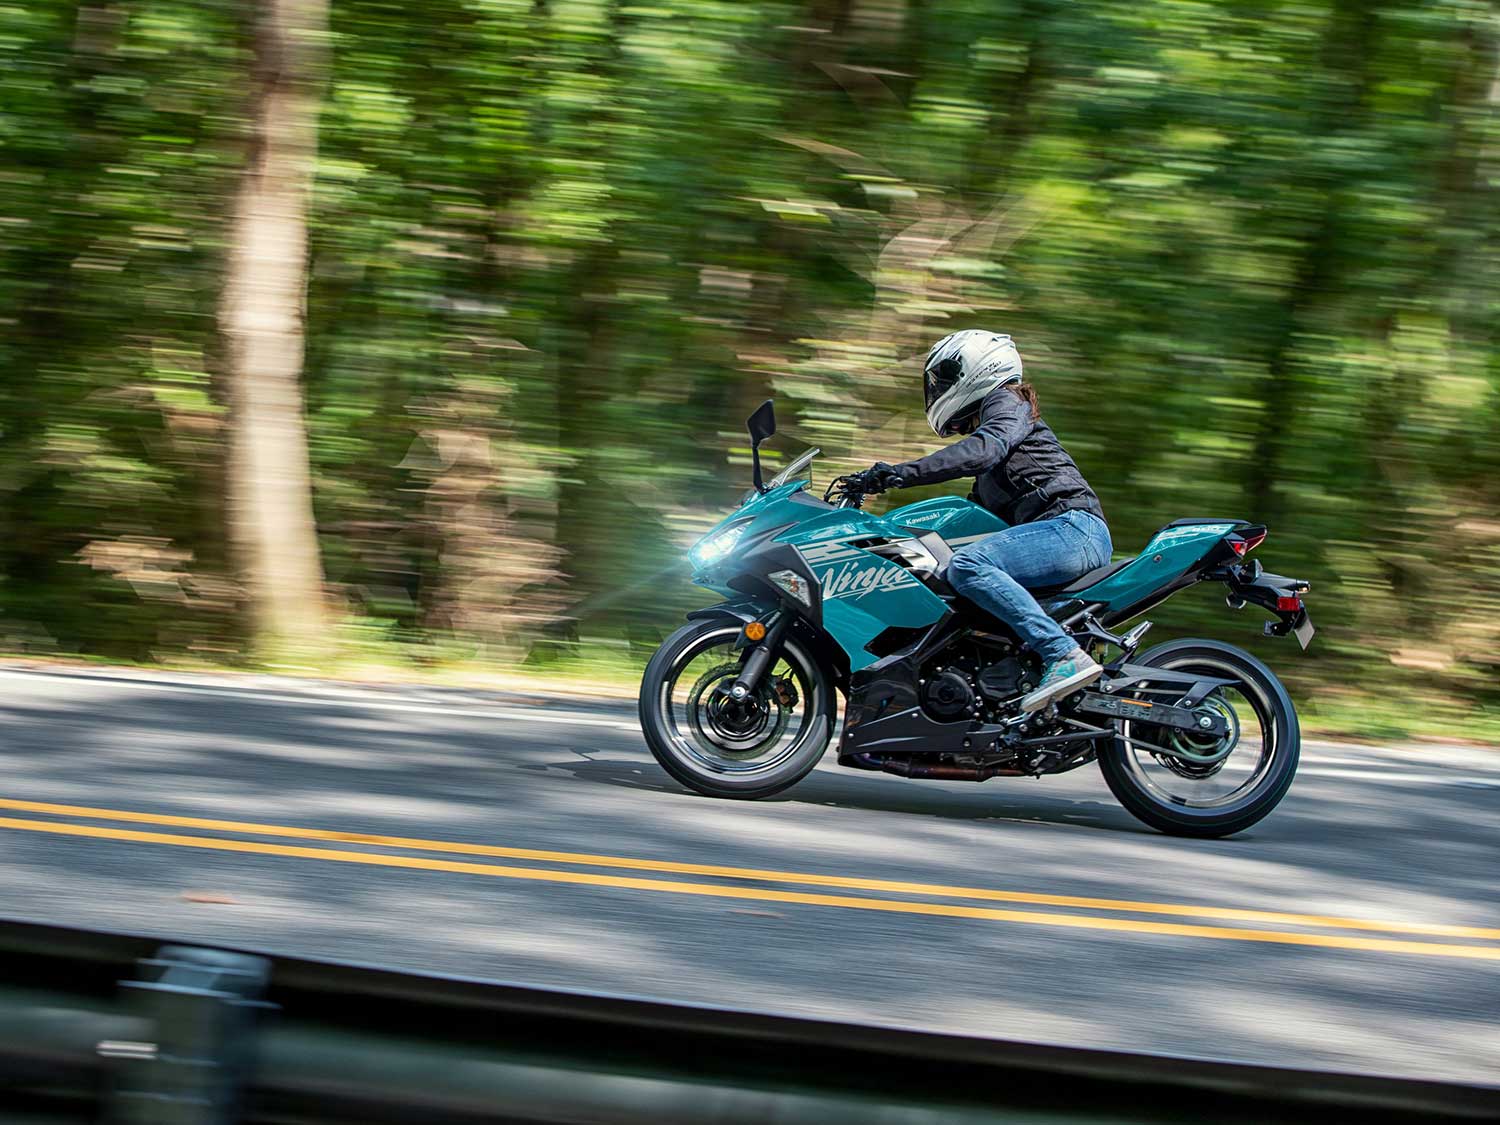 2021 Kawasaki ABS And Ninja 650 First Look | Motorcyclist